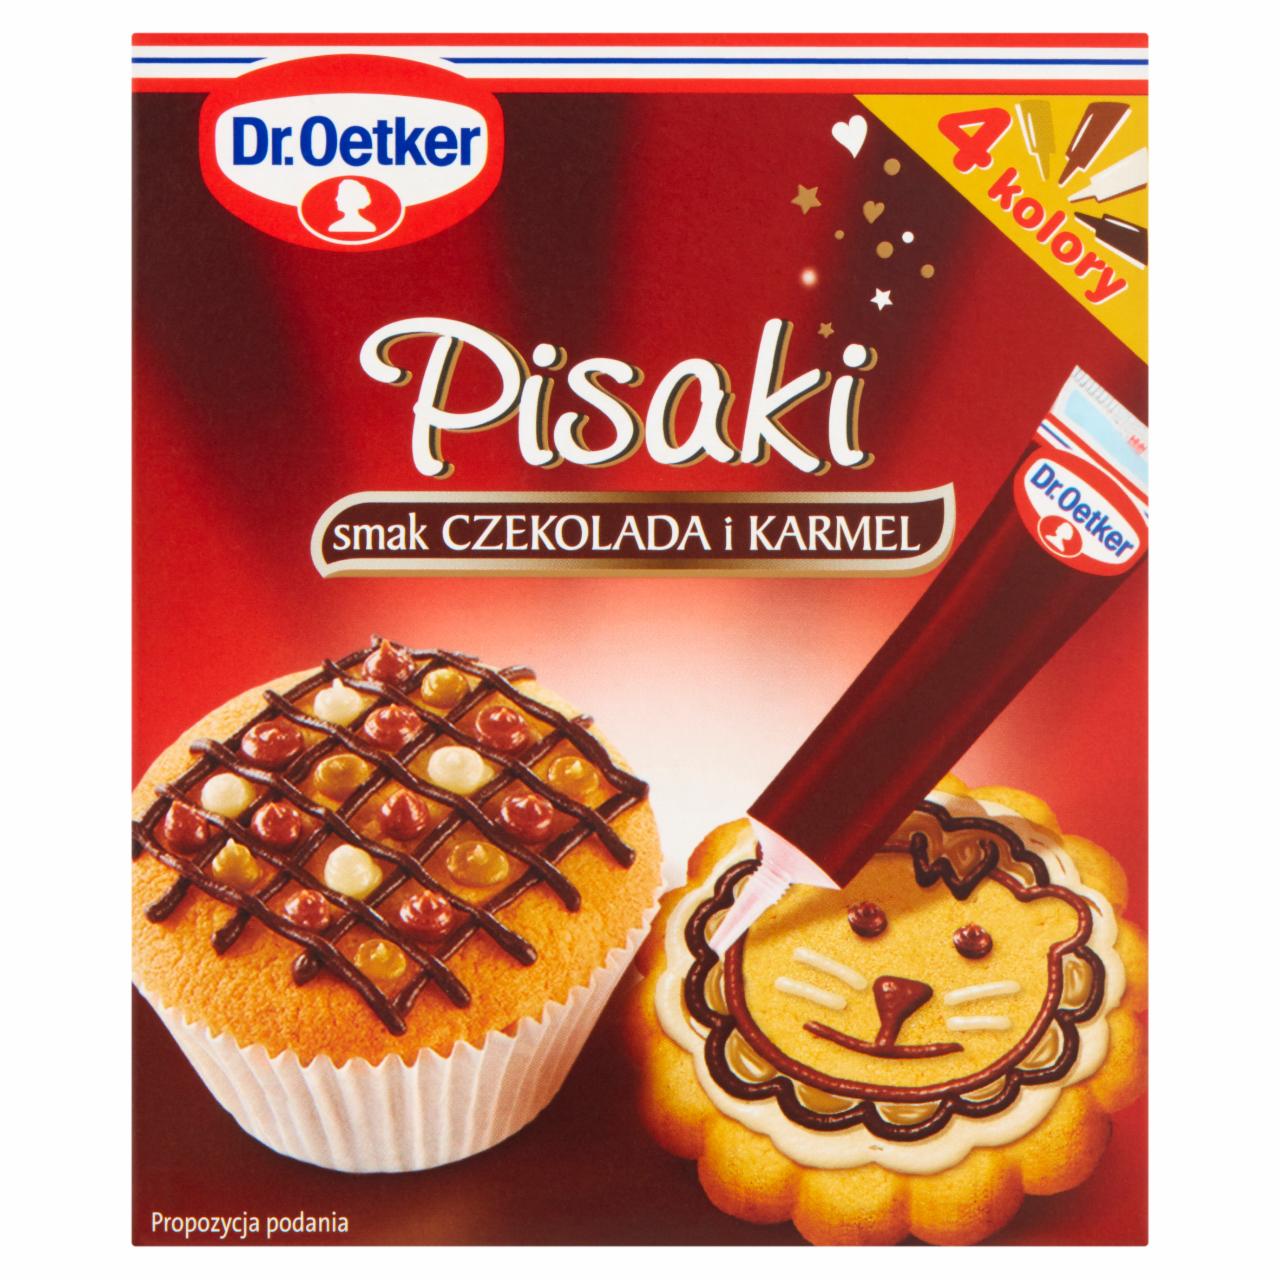 Zdjęcia - Dr. Oetker Pisaki smak czekolada i karmel 76 g (4 x 19 g)